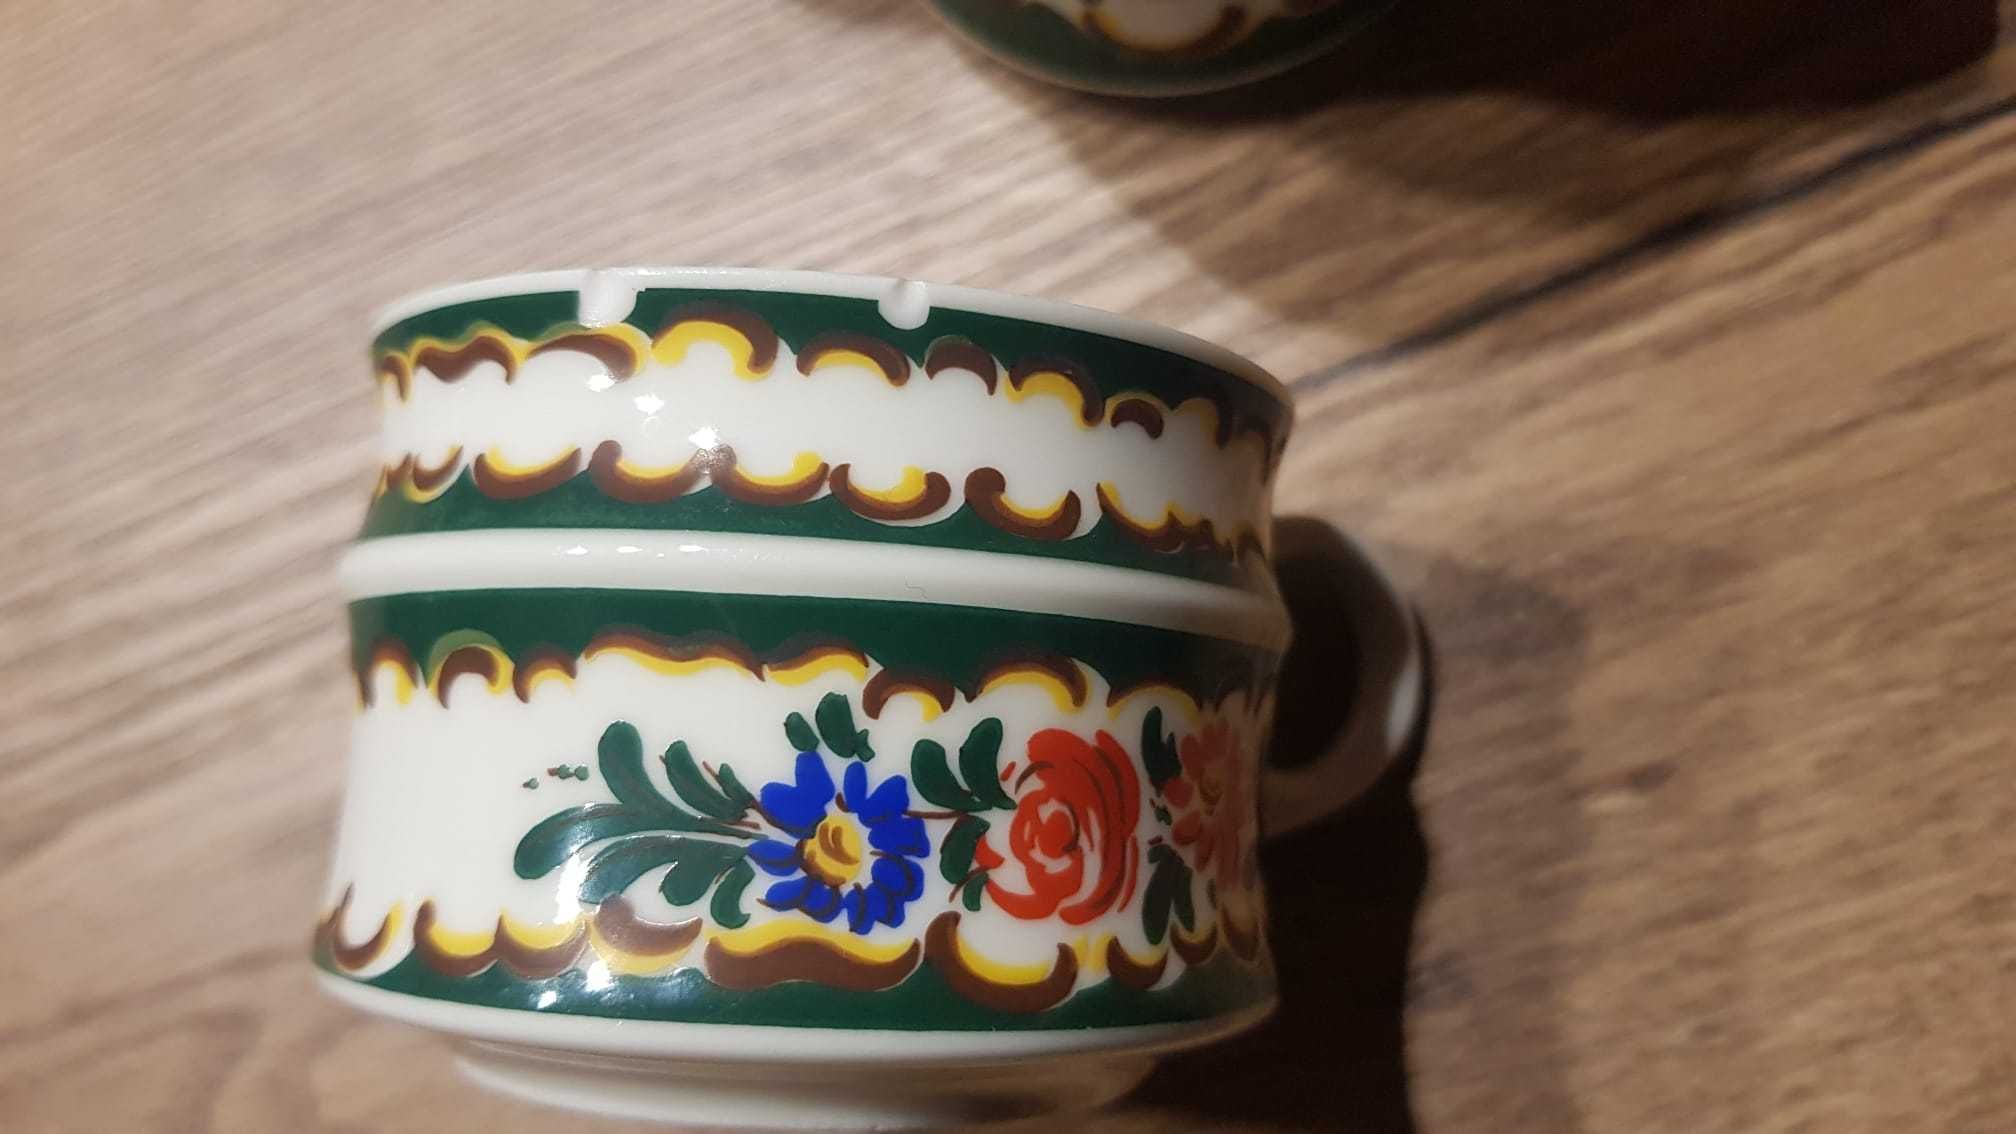 Porcelanowy zestaw do kawy lub herbaty